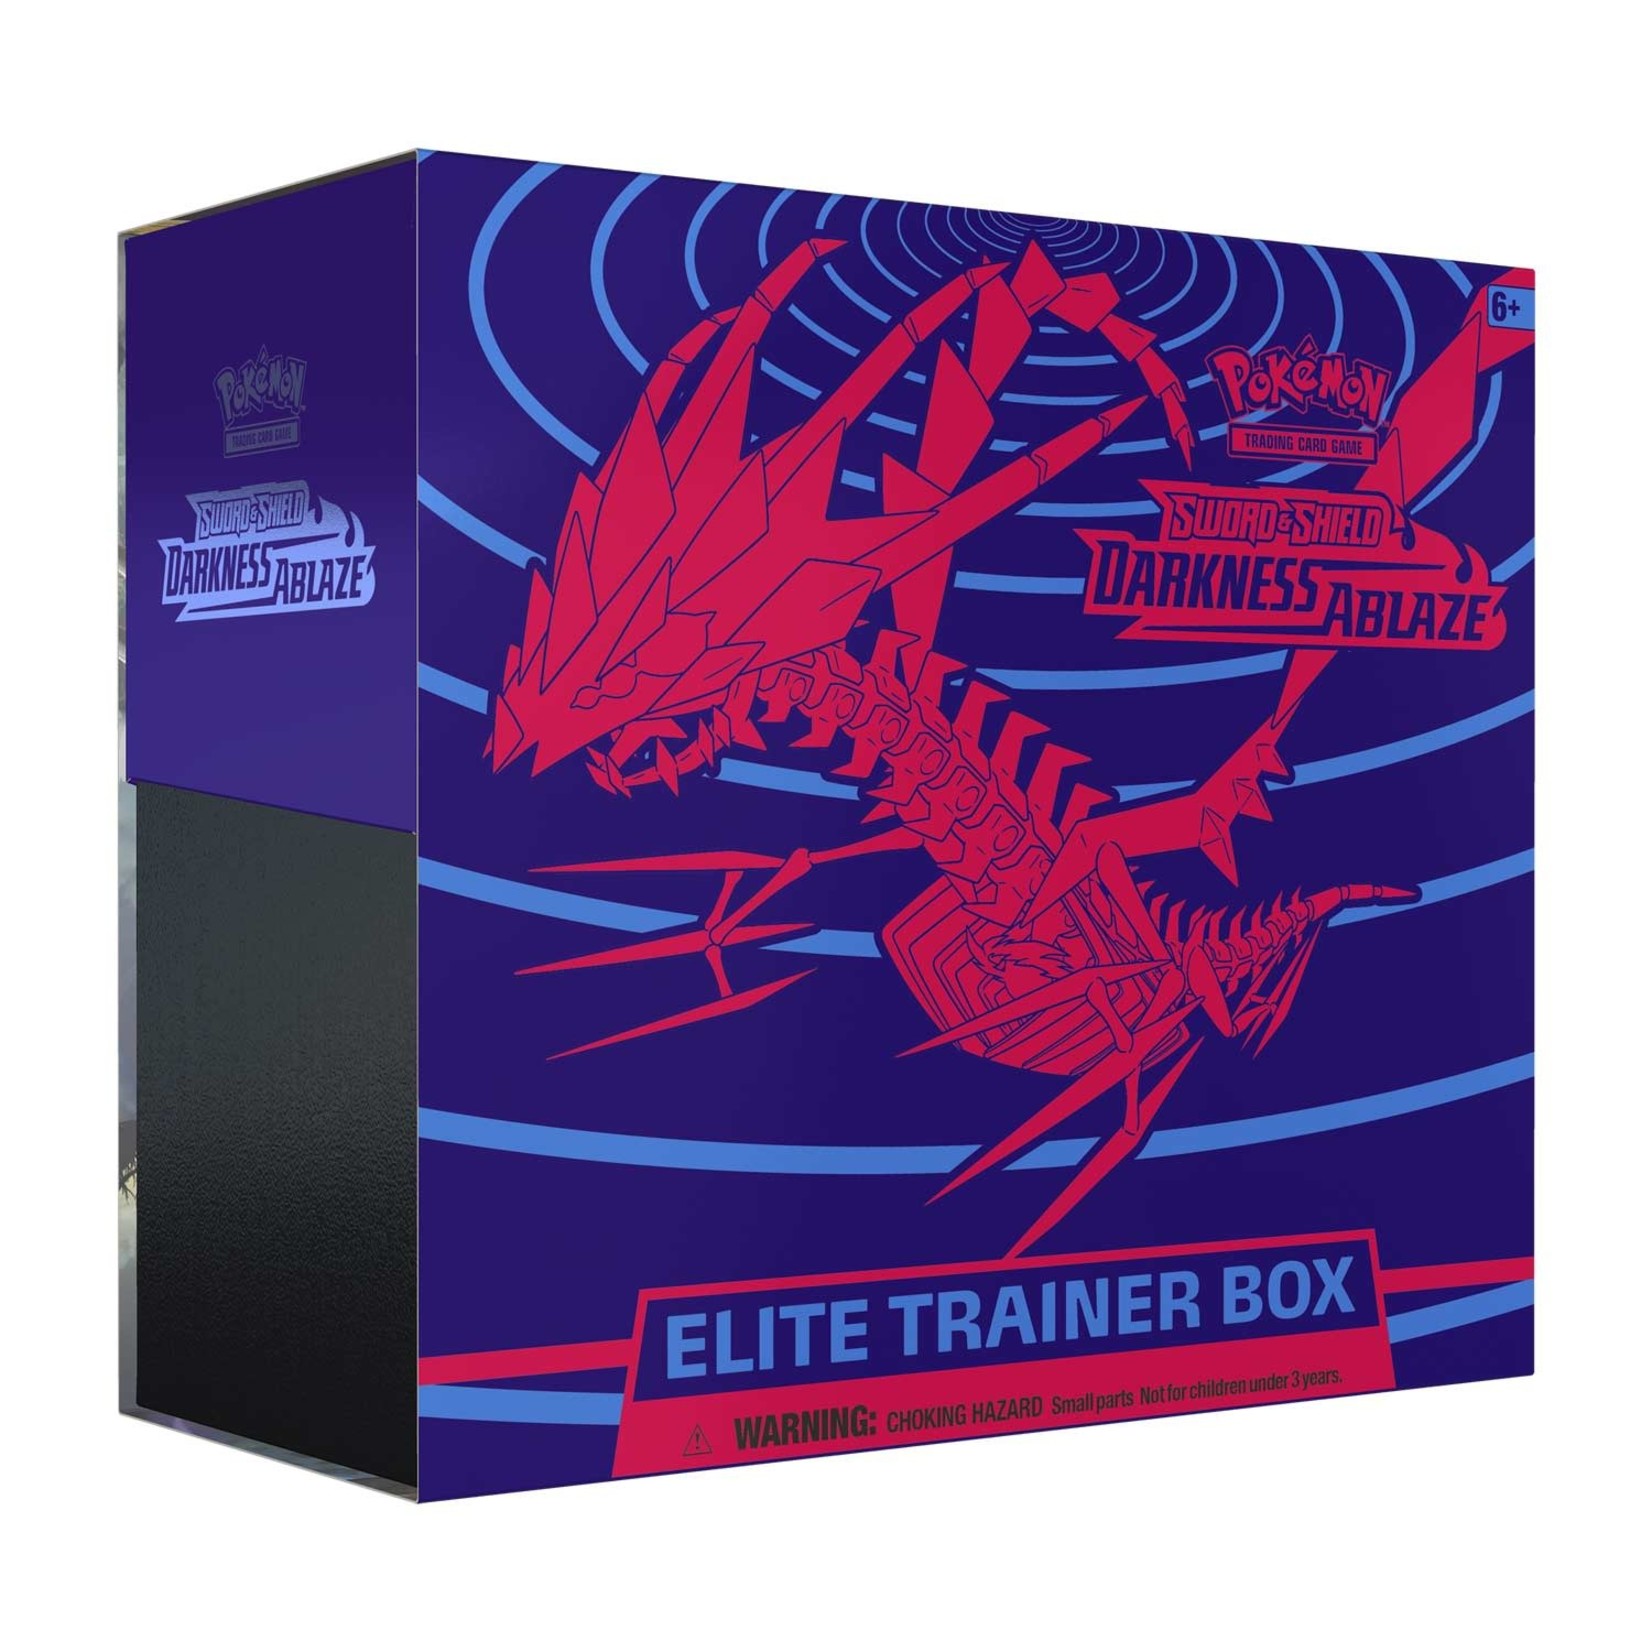 Pokémon Pokémon TCG: Darkness Ablaze Elite Trainer Box